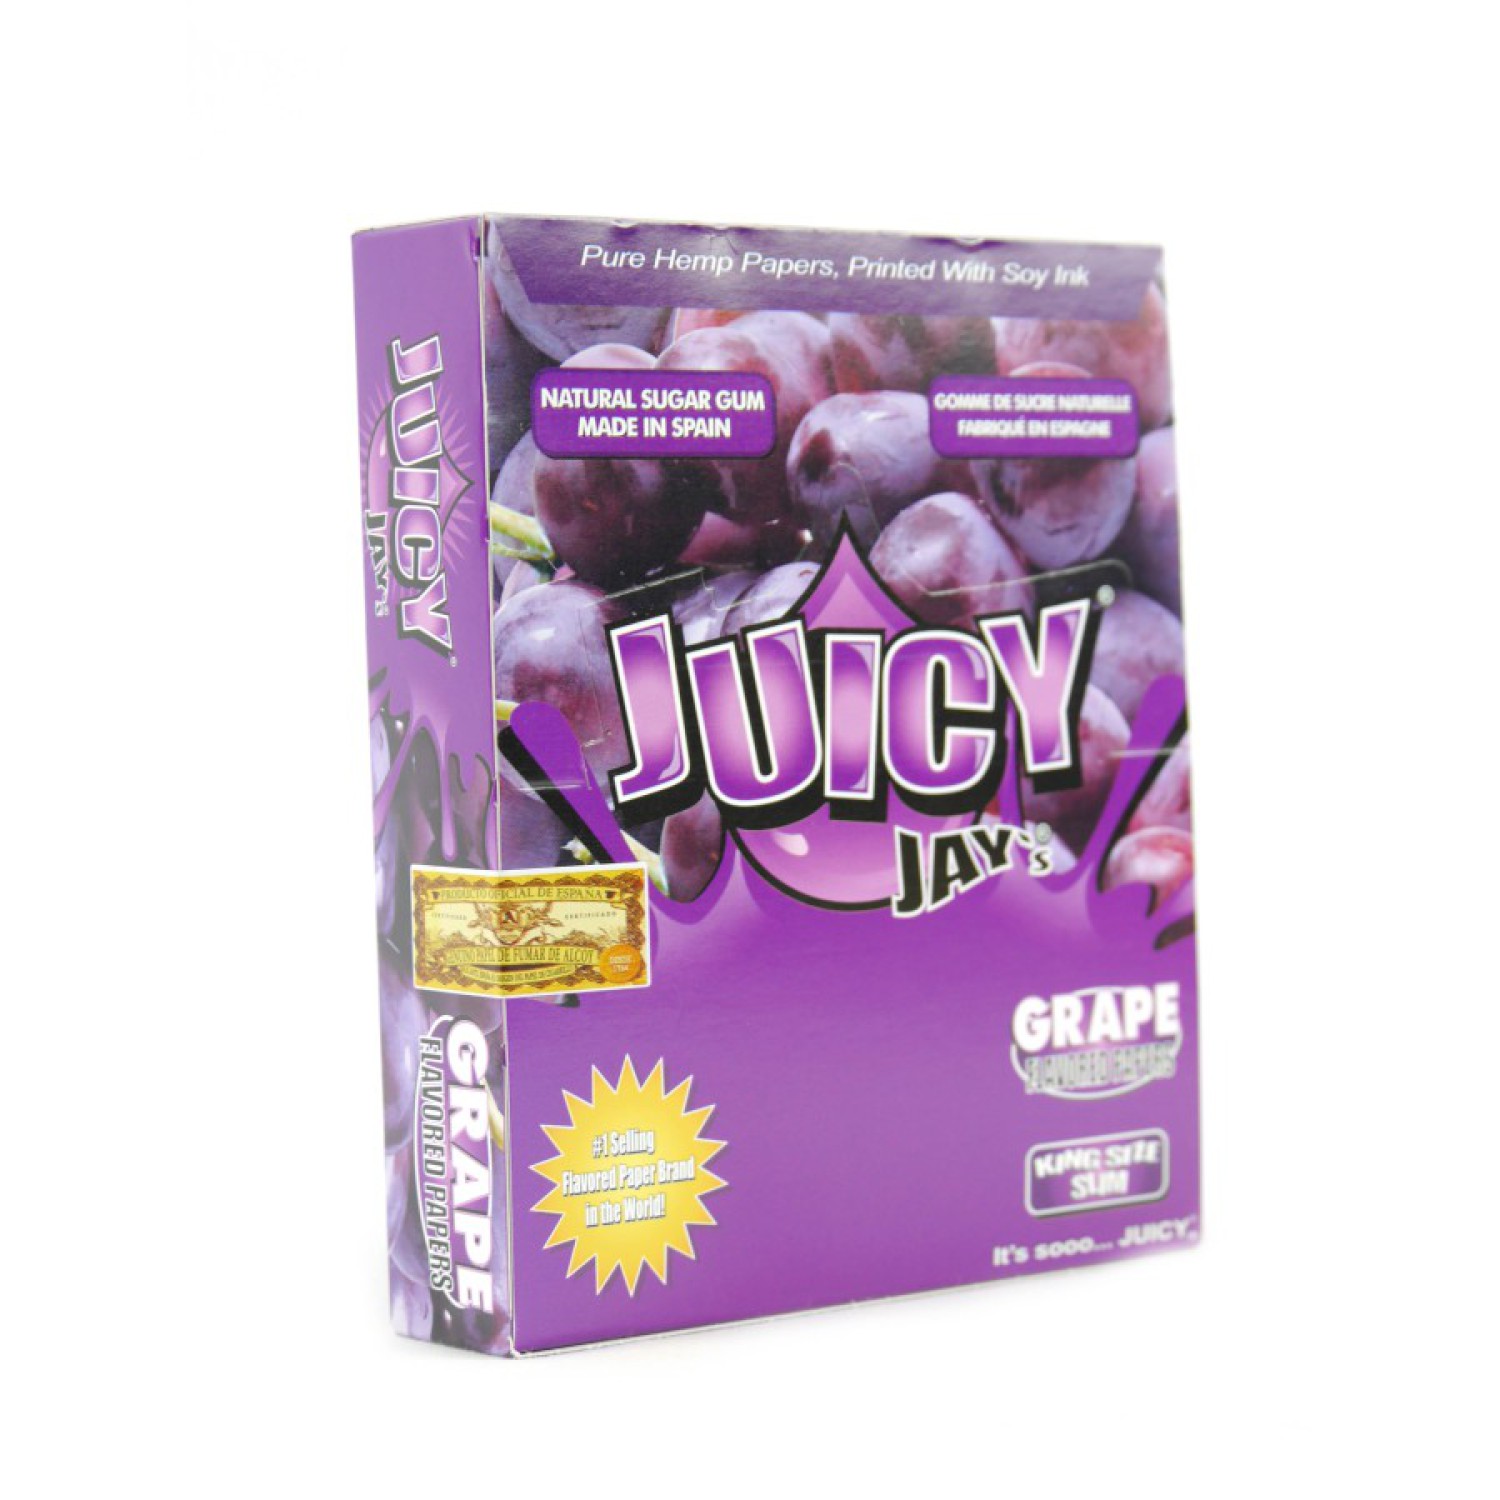 Juicy Jays "Traube / Grape" KS Slim 